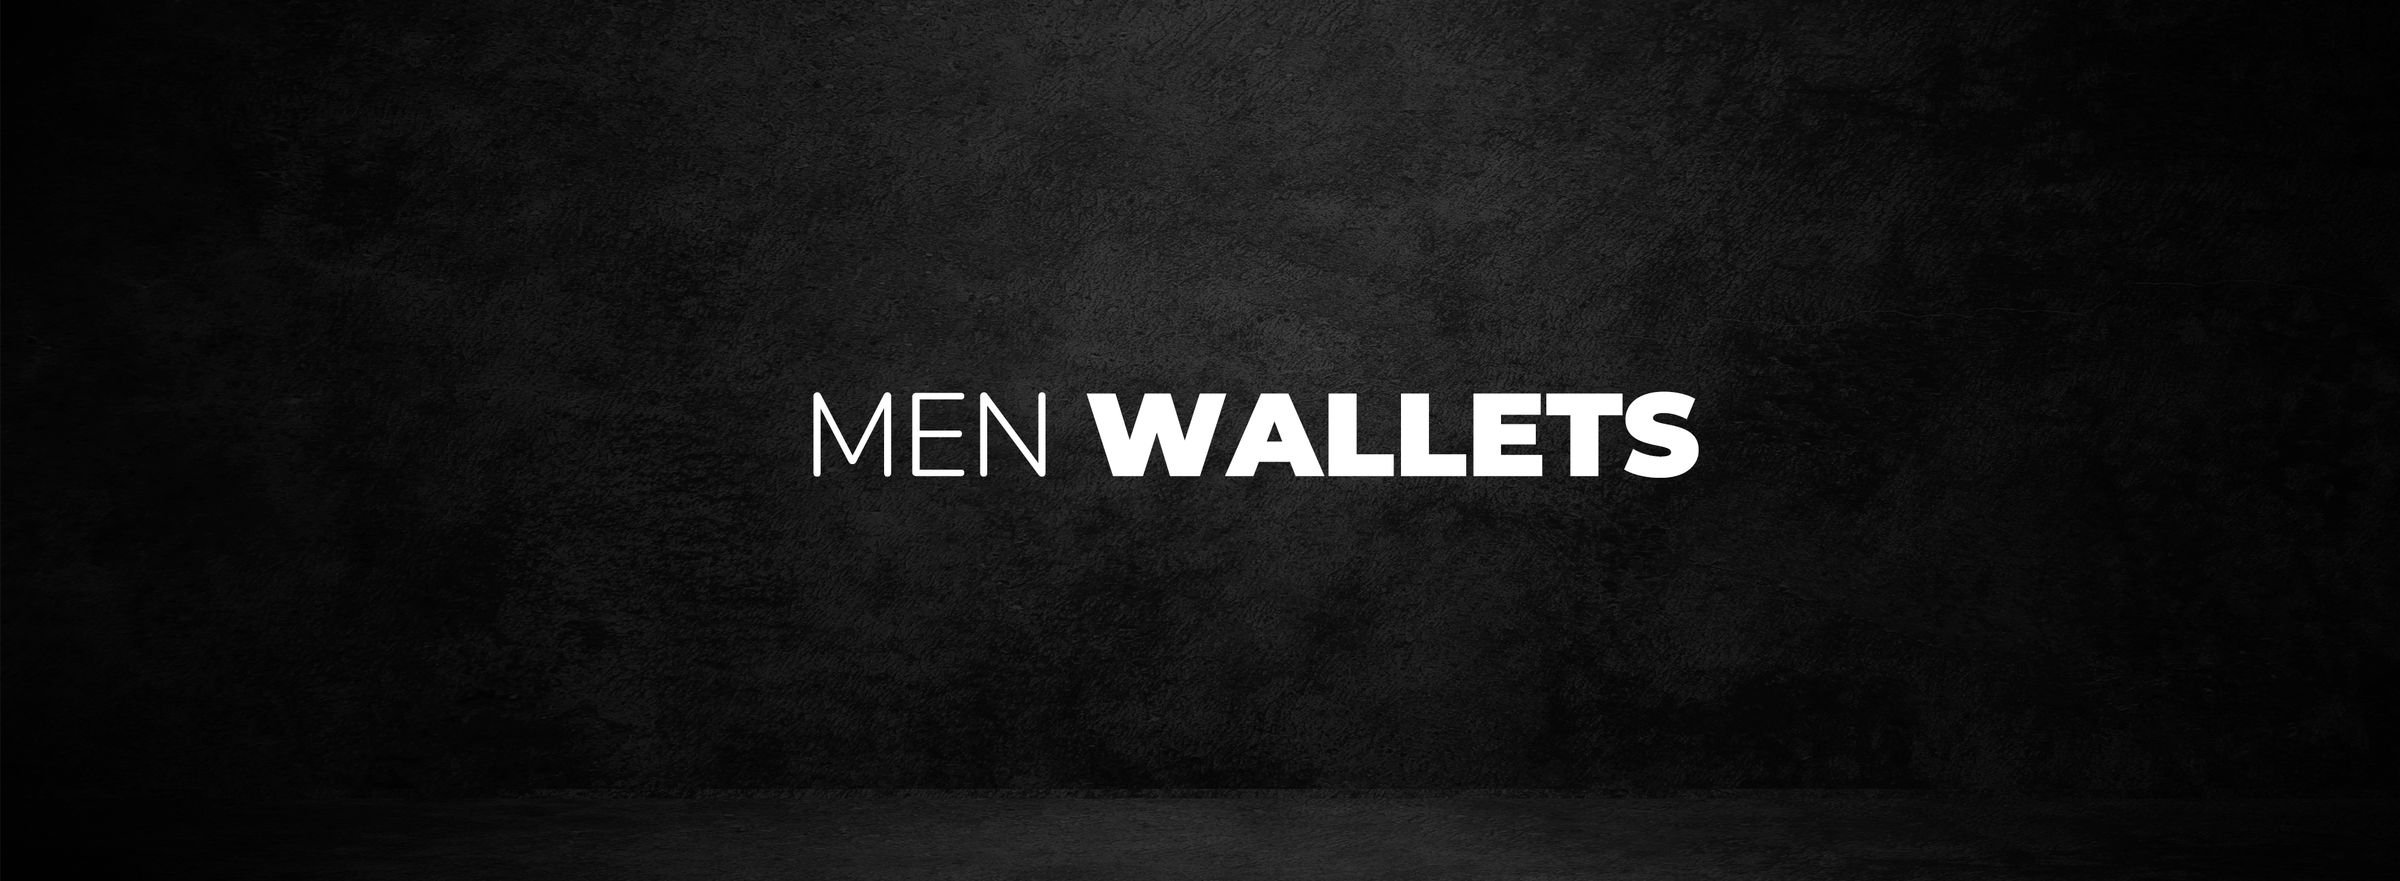 Men's Wallets - 3alababak